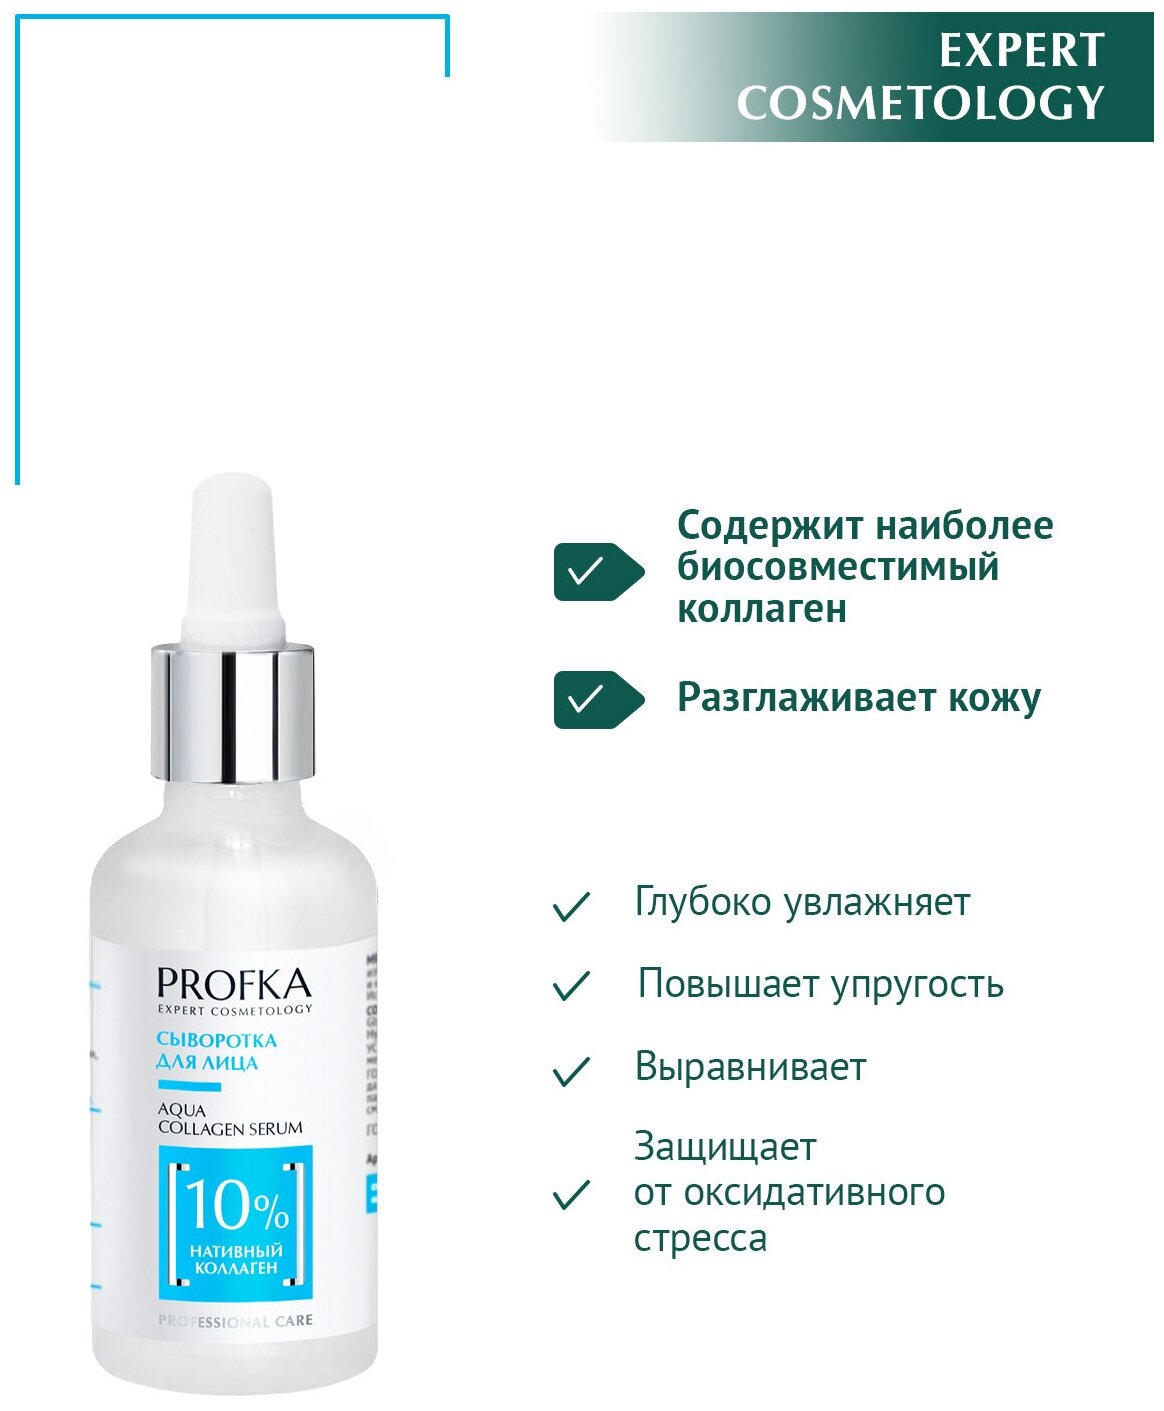 PROFKA Expert Cosmetology Сыворотка для лица AQUA Collagen Serum с нативным коллагеном, 50 мл